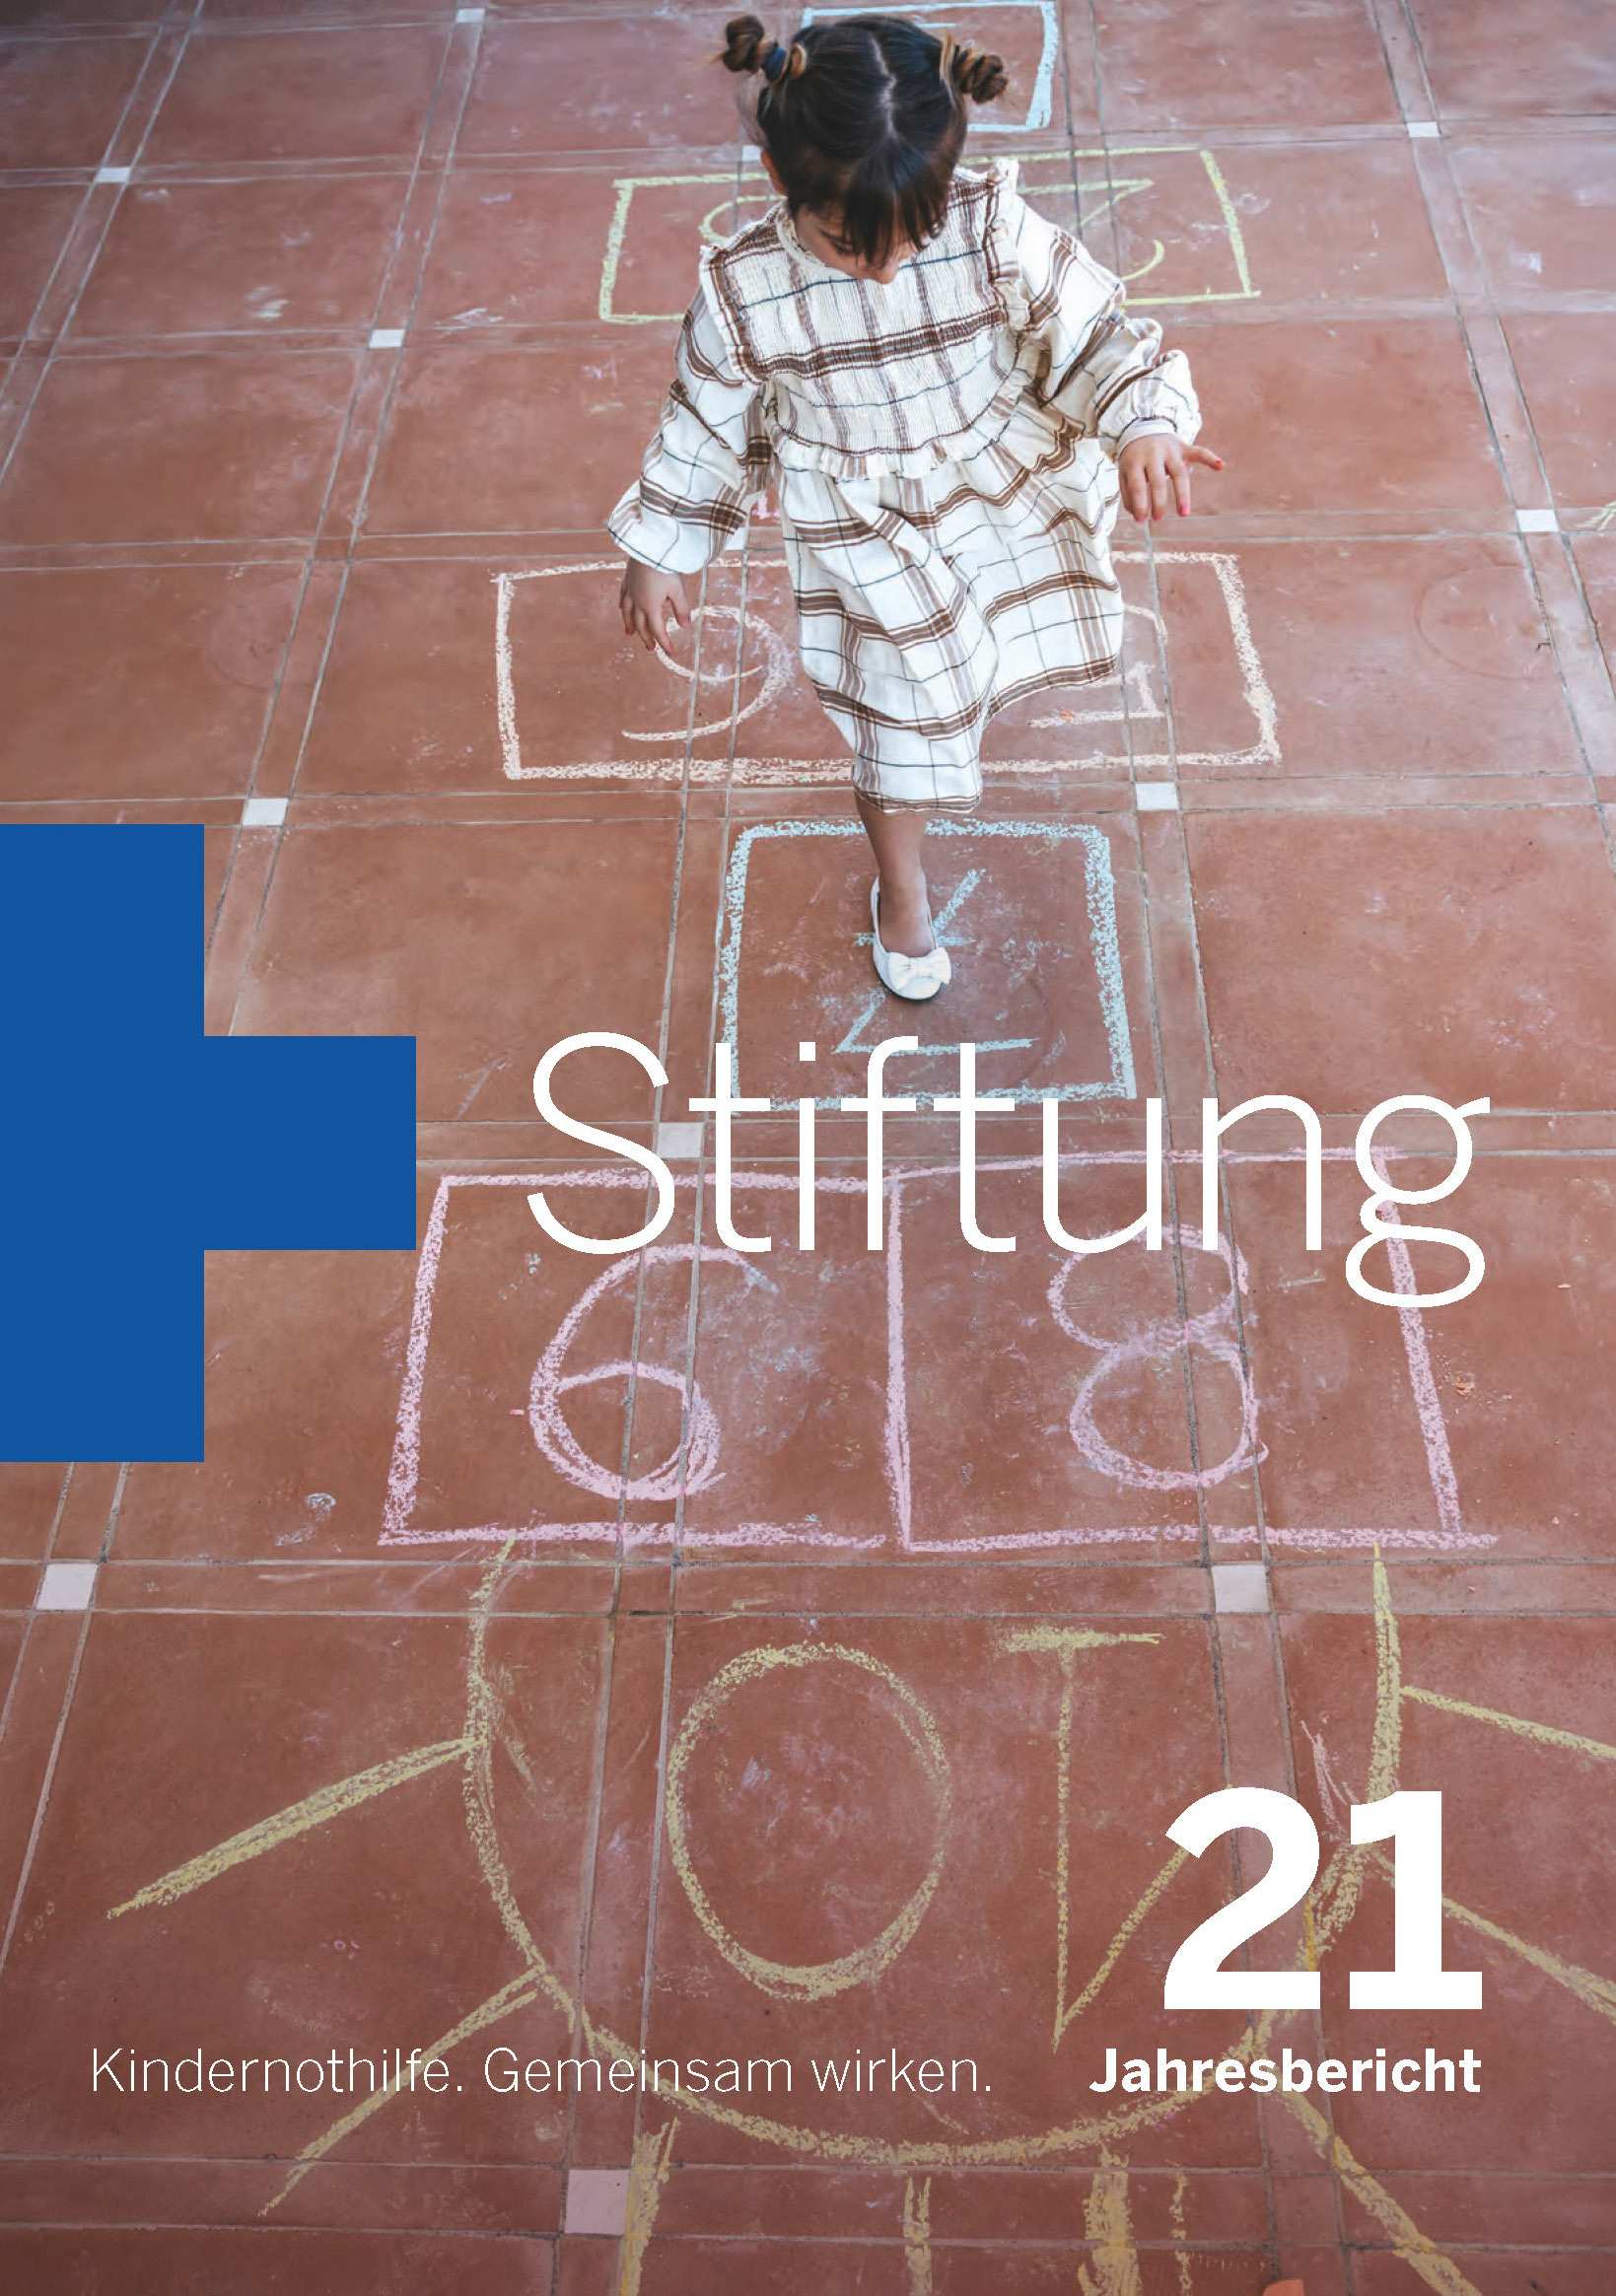 Coverbild des Jahresberichts der Kindernothilfe-Stiftung 2021